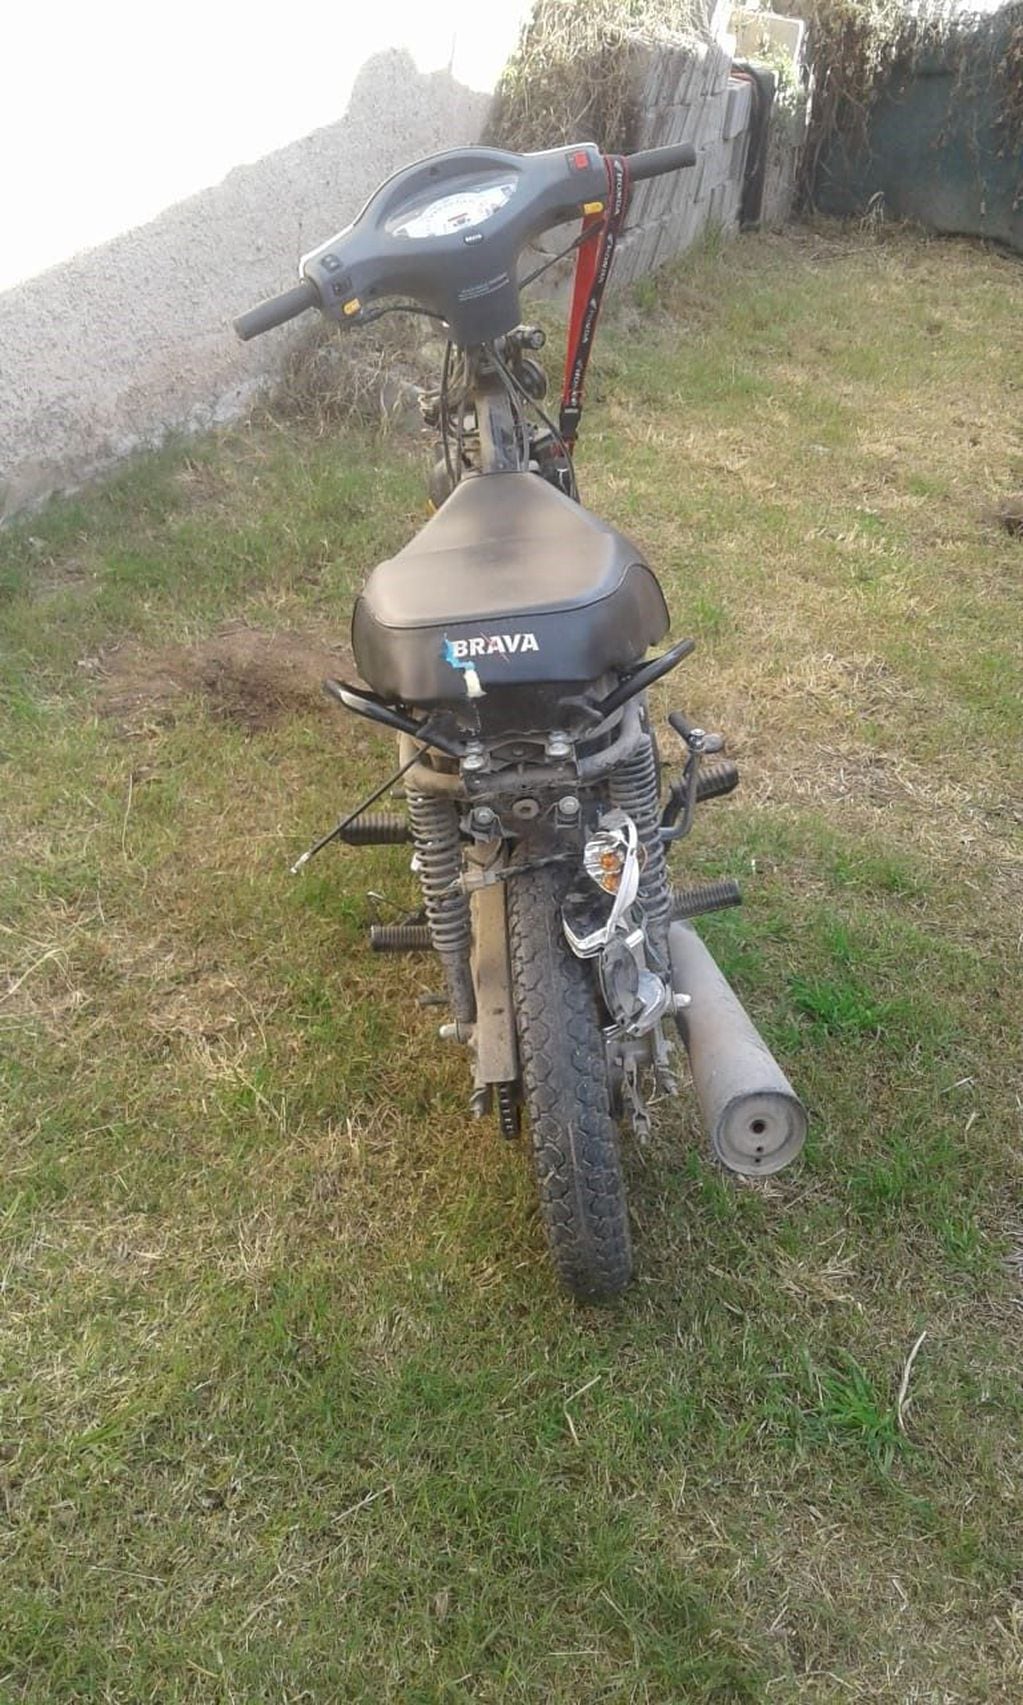 Motocicleta hallada en la zona de Solares del Palmar, Alta Gracia.